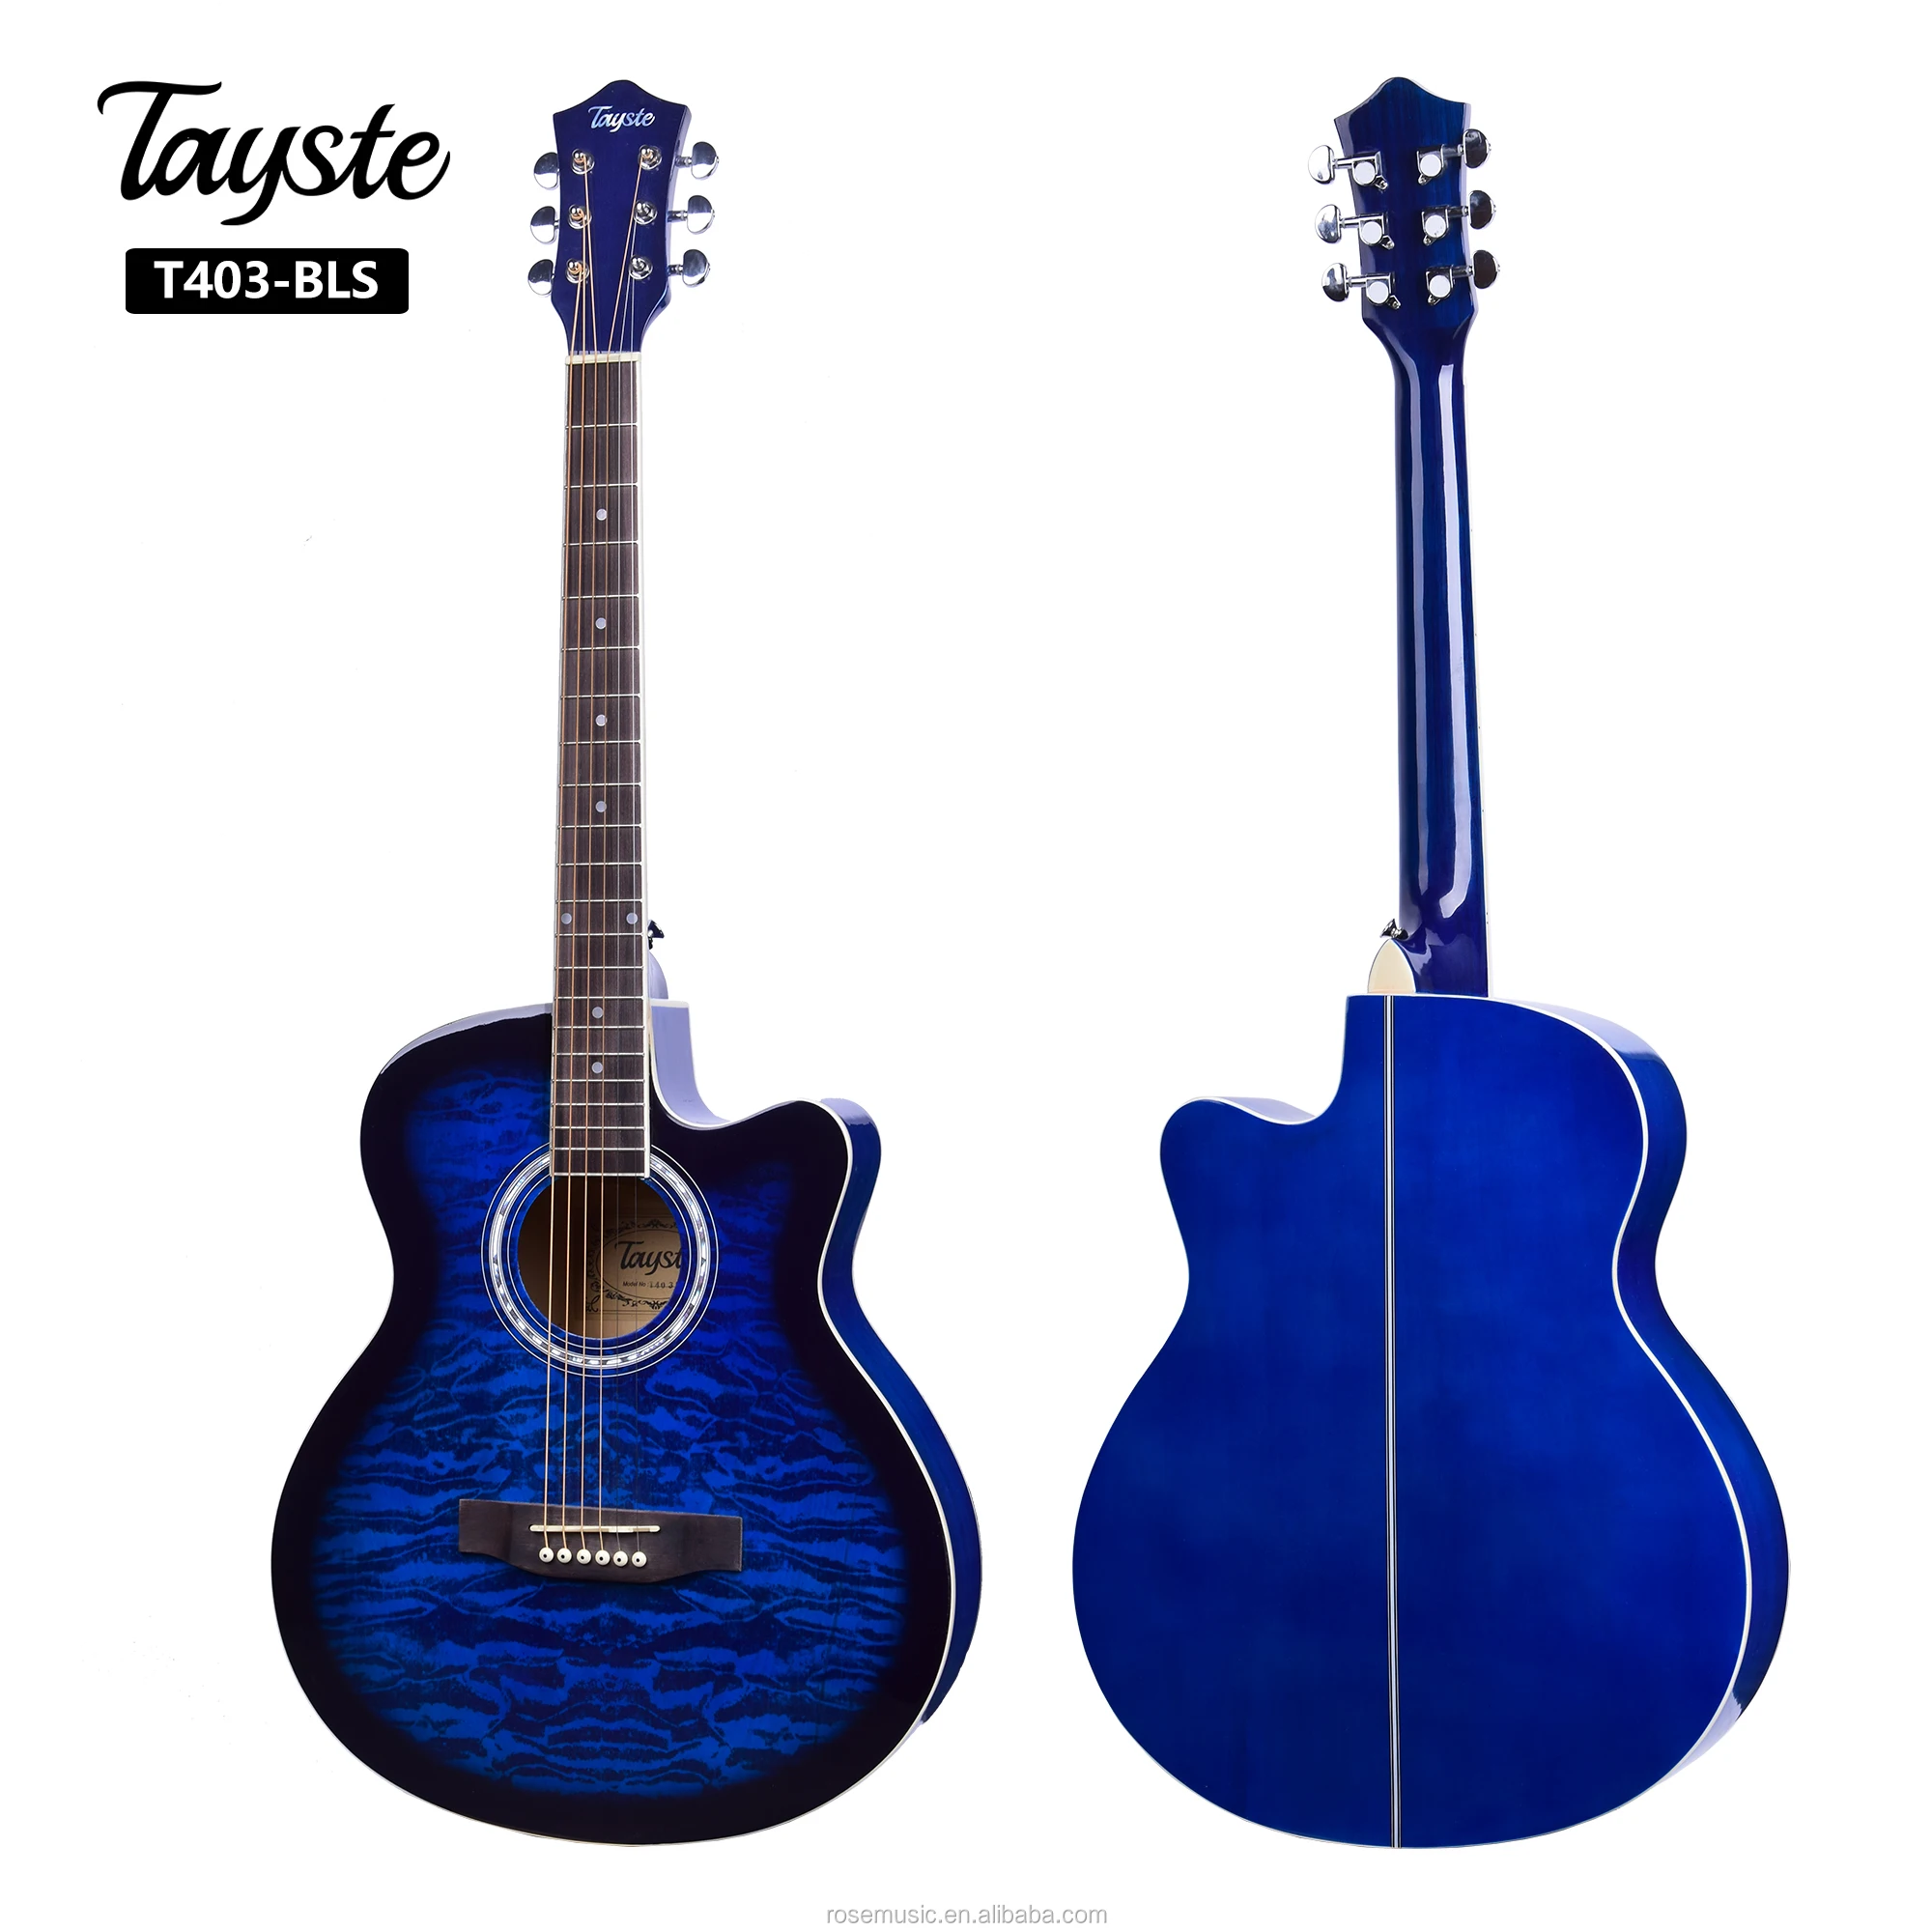 Vente guitare acoustique Tunisie prix imbattable